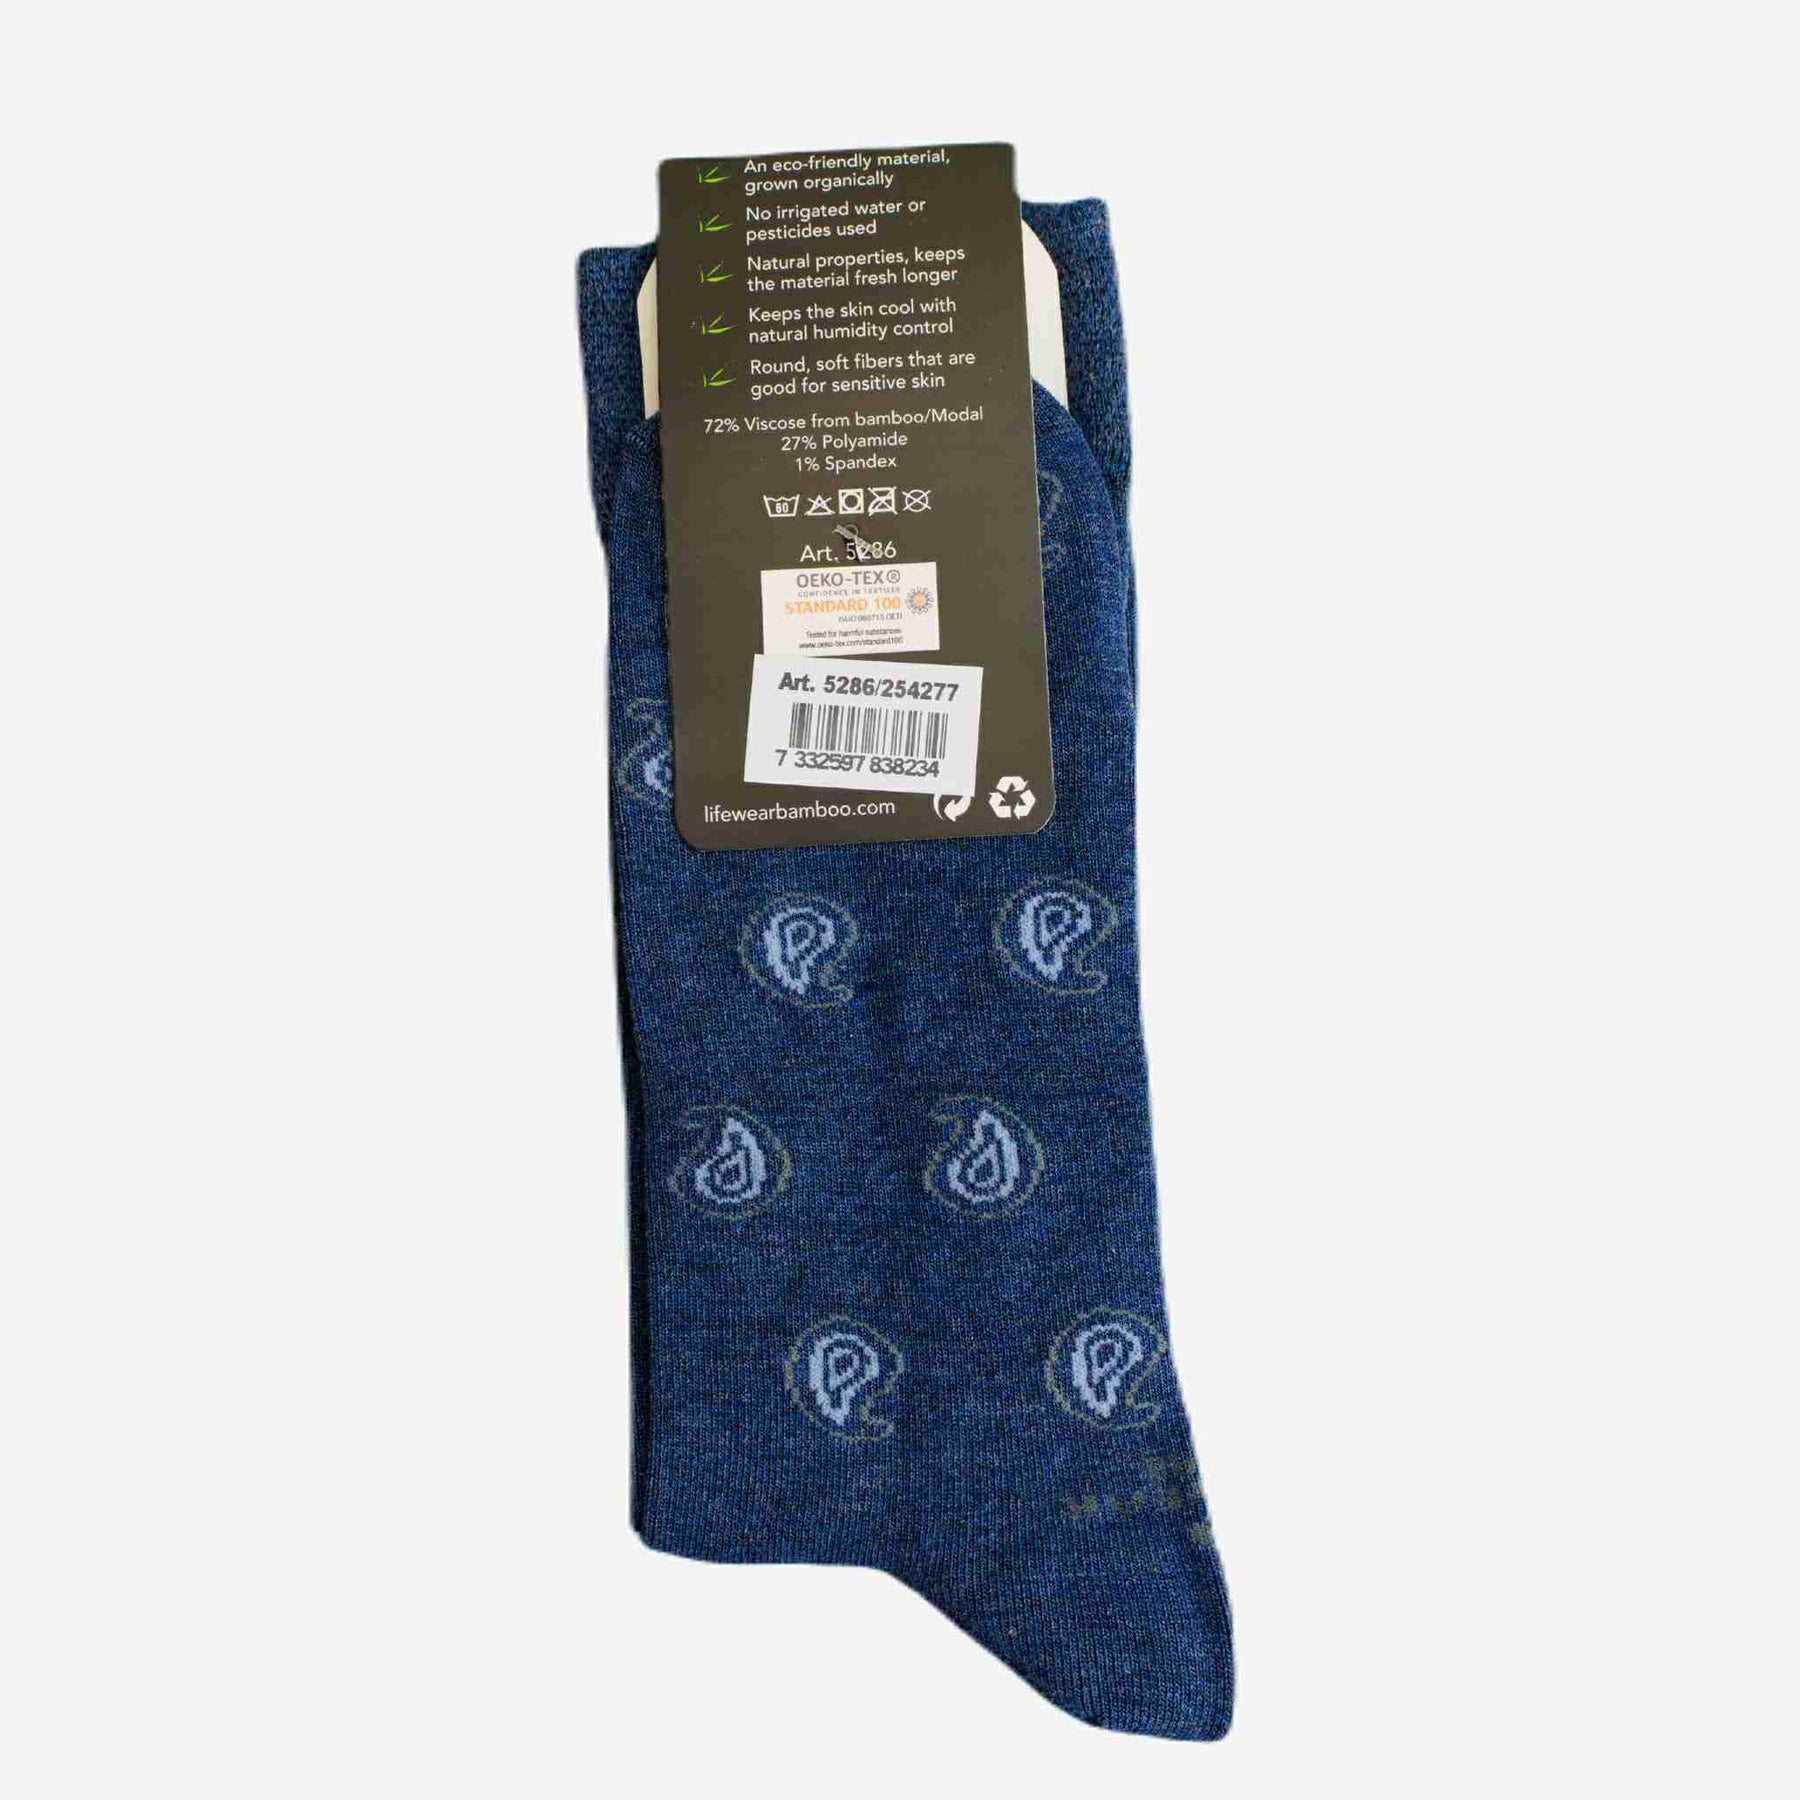 Men's blue Bamboo socks | Jord of Sweden